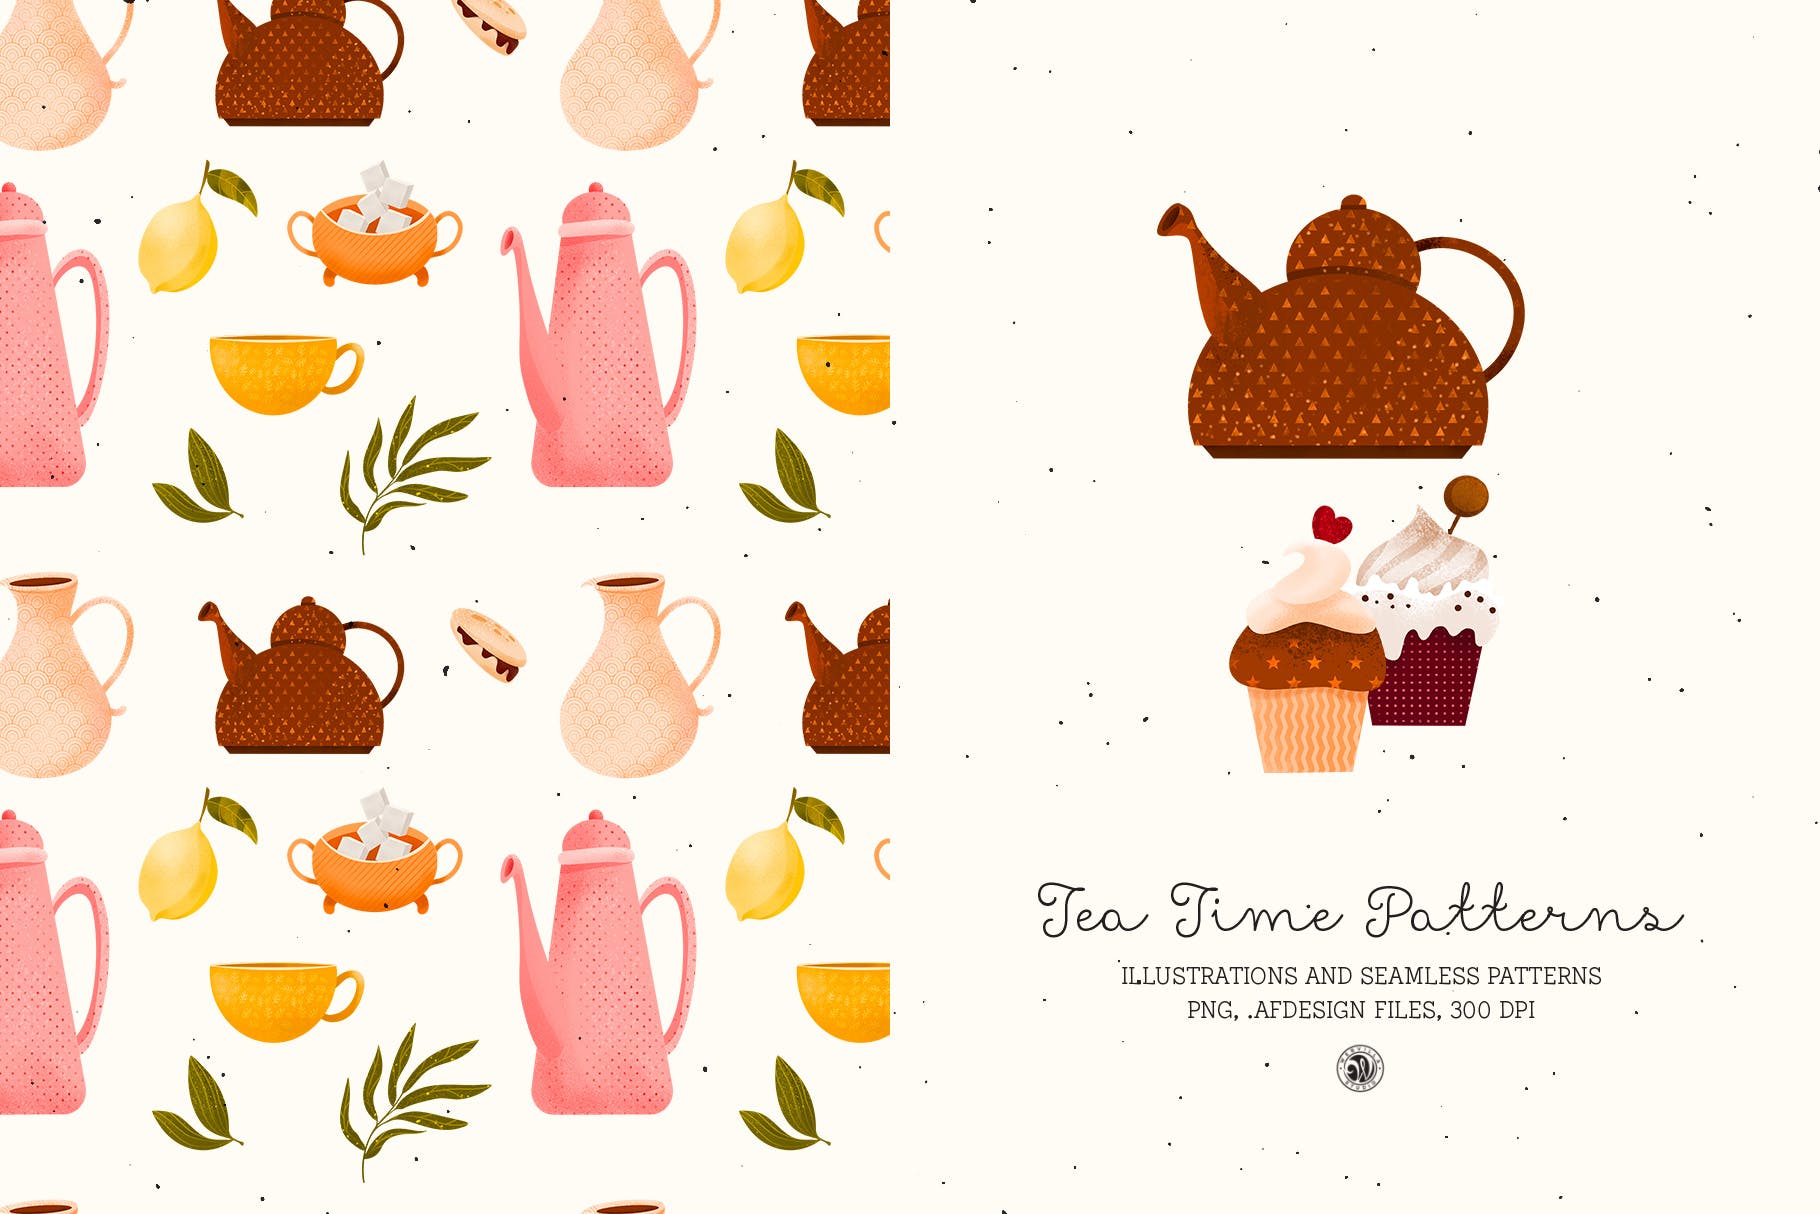 下午茶时光主题点心甜点手绘图案无缝背景素材 Tea Time Patterns插图(5)